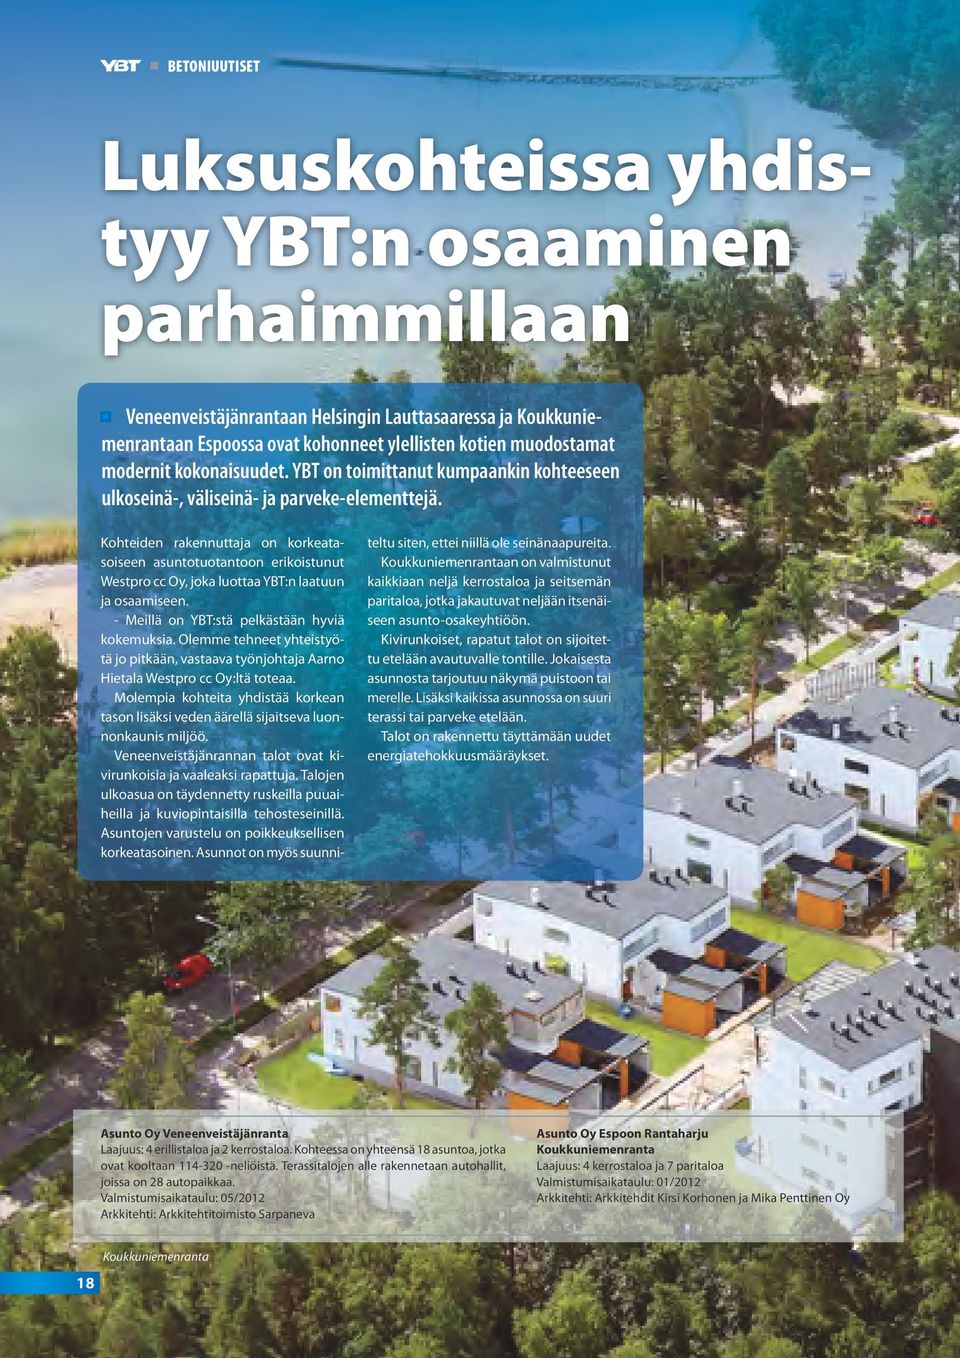 Kohteiden rakennuttaja on korkeatasoiseen asuntotuotantoon erikoistunut Westpro cc Oy, joka luottaa YBT:n laatuun ja osaamiseen. - Meillä on YBT:stä pelkästään hyviä kokemuksia.